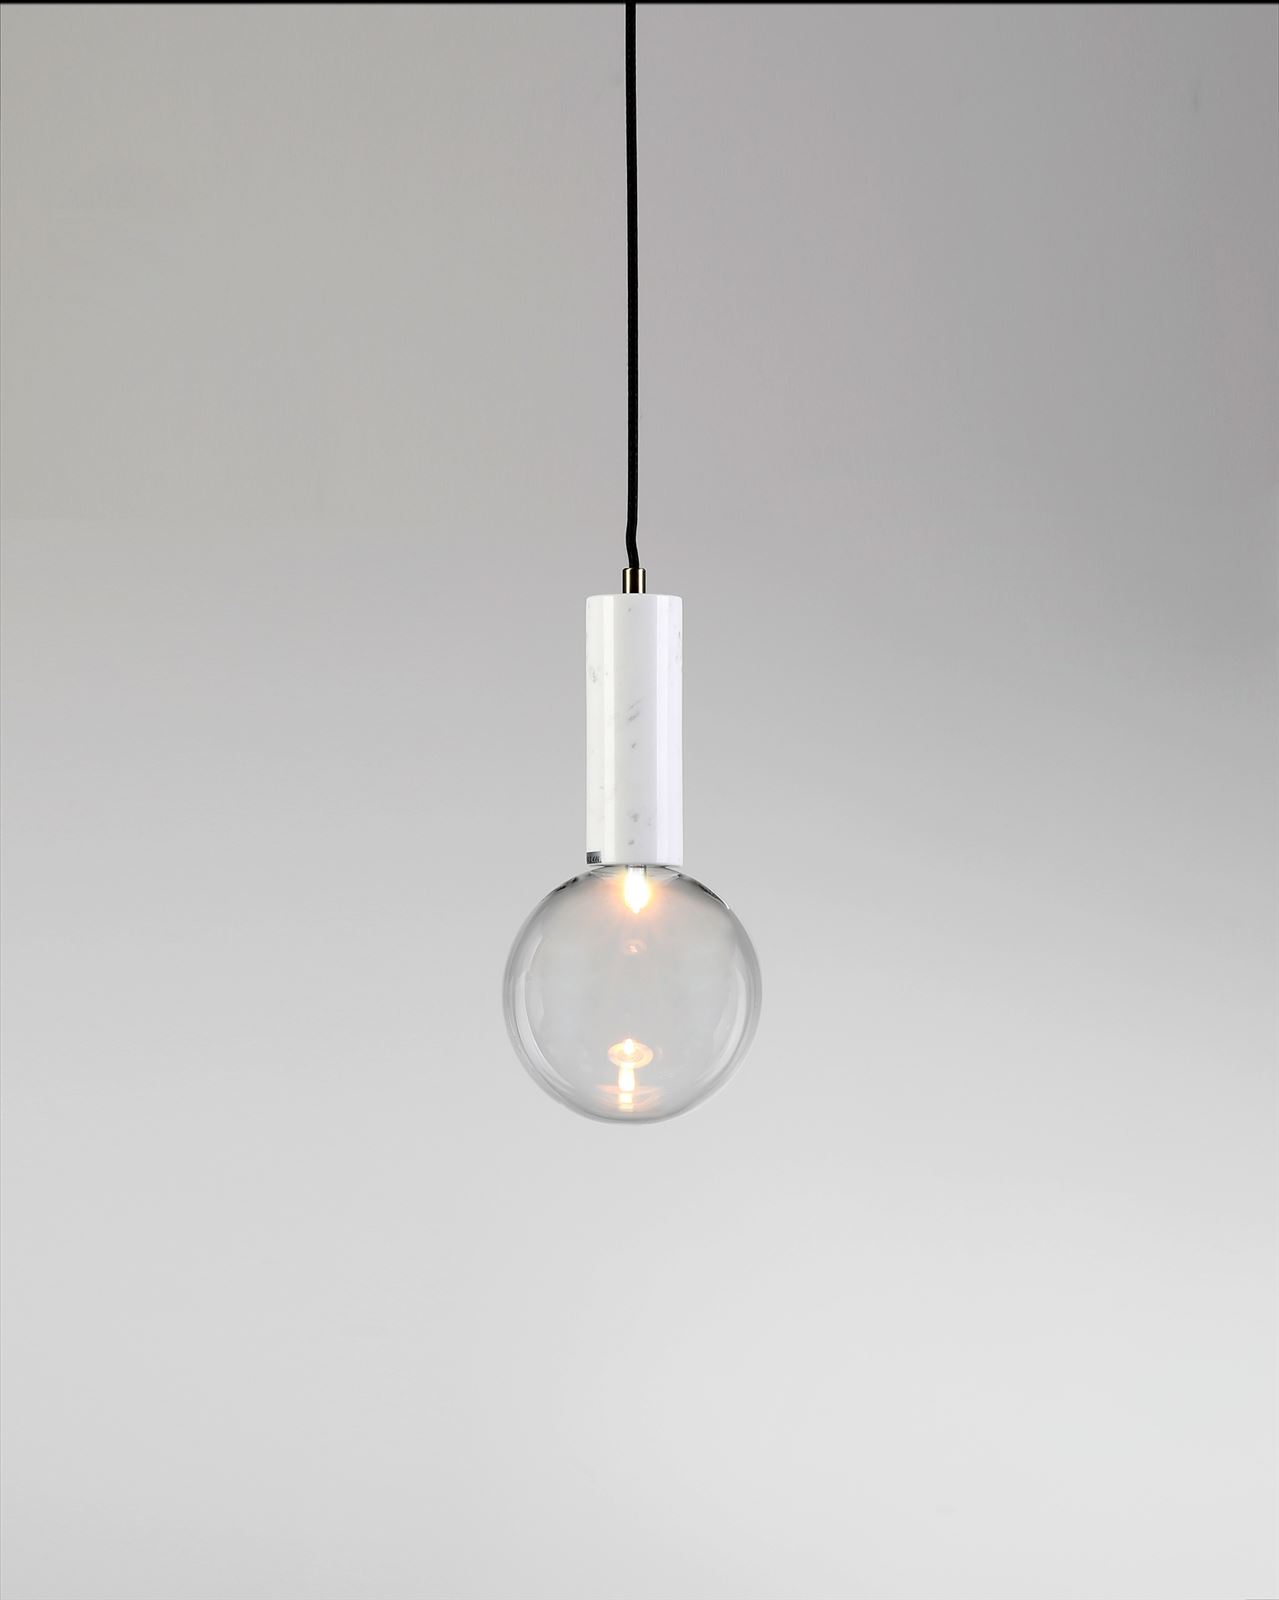 גופי תאורה מקטגוריית: מנורות תלויות ,שם המוצר: BADOLINA M